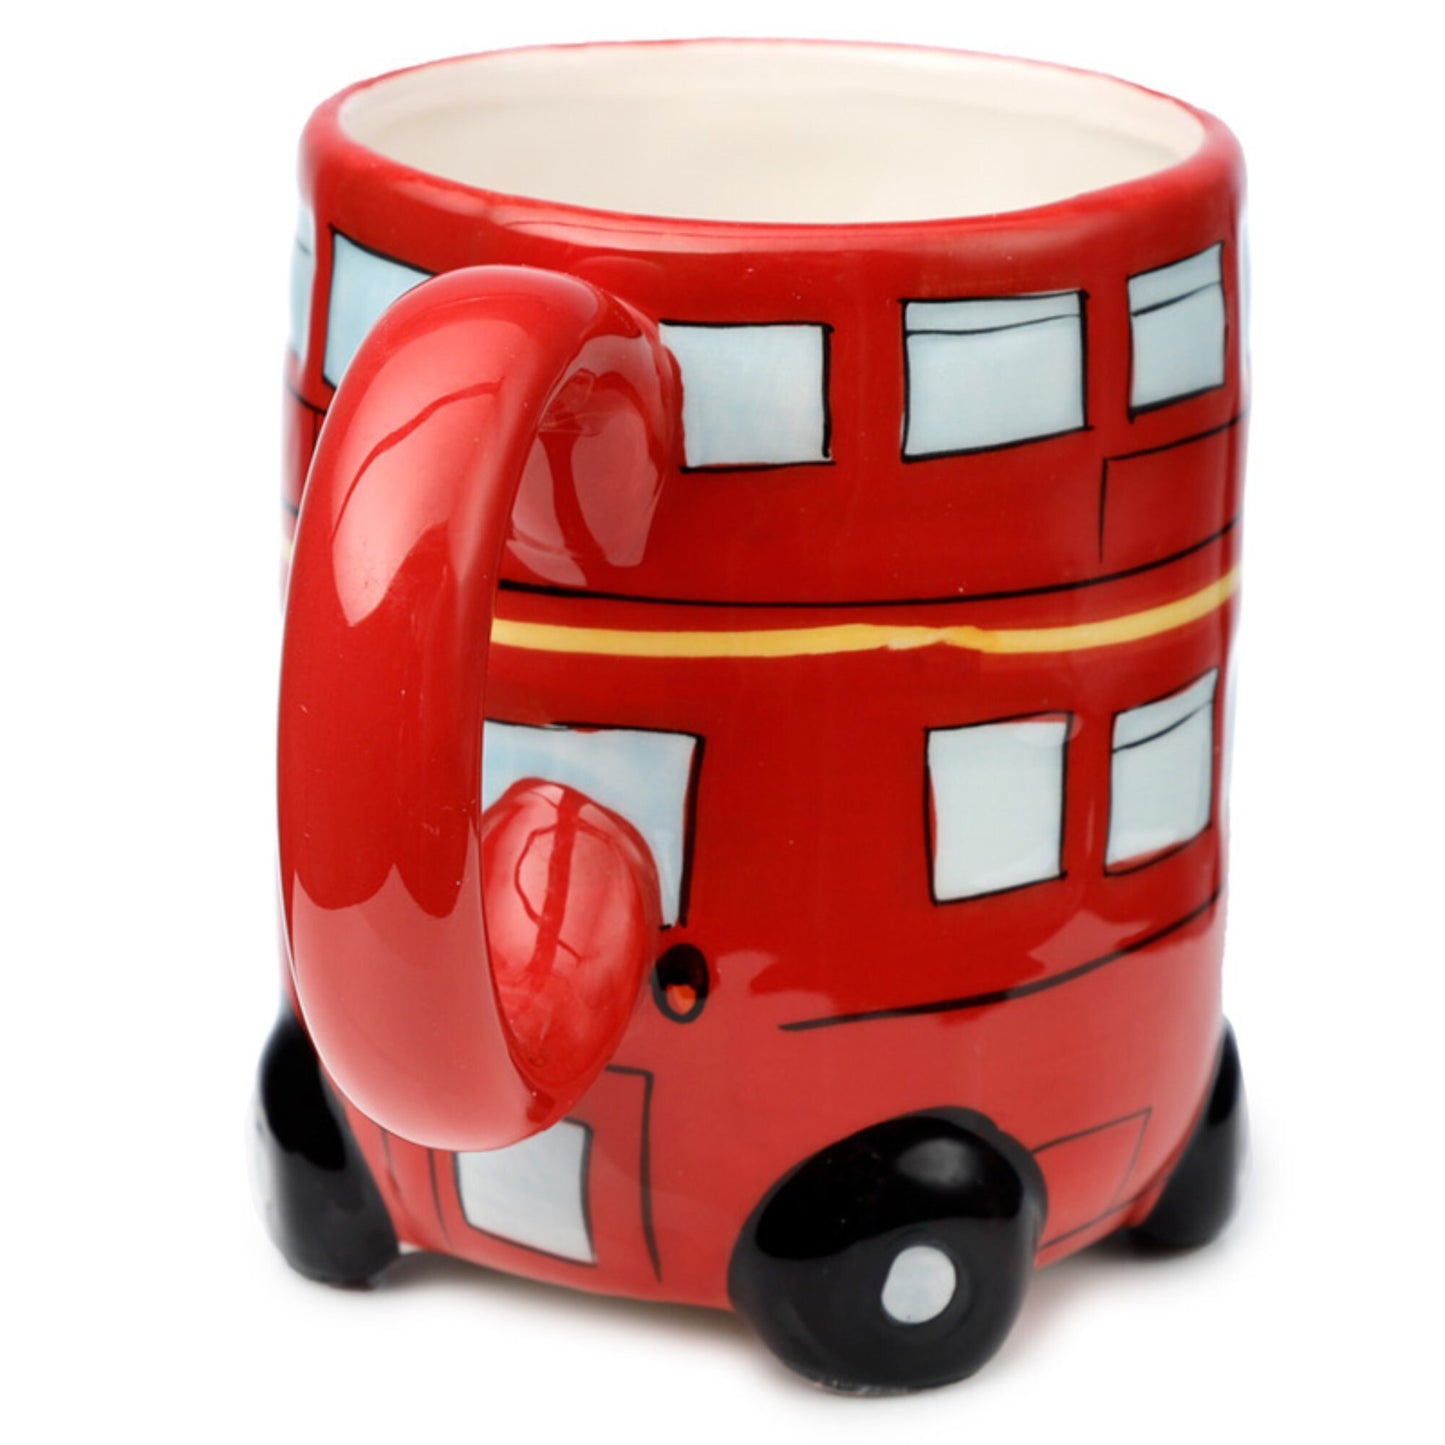 Novelty Red Bus Shaped Mug